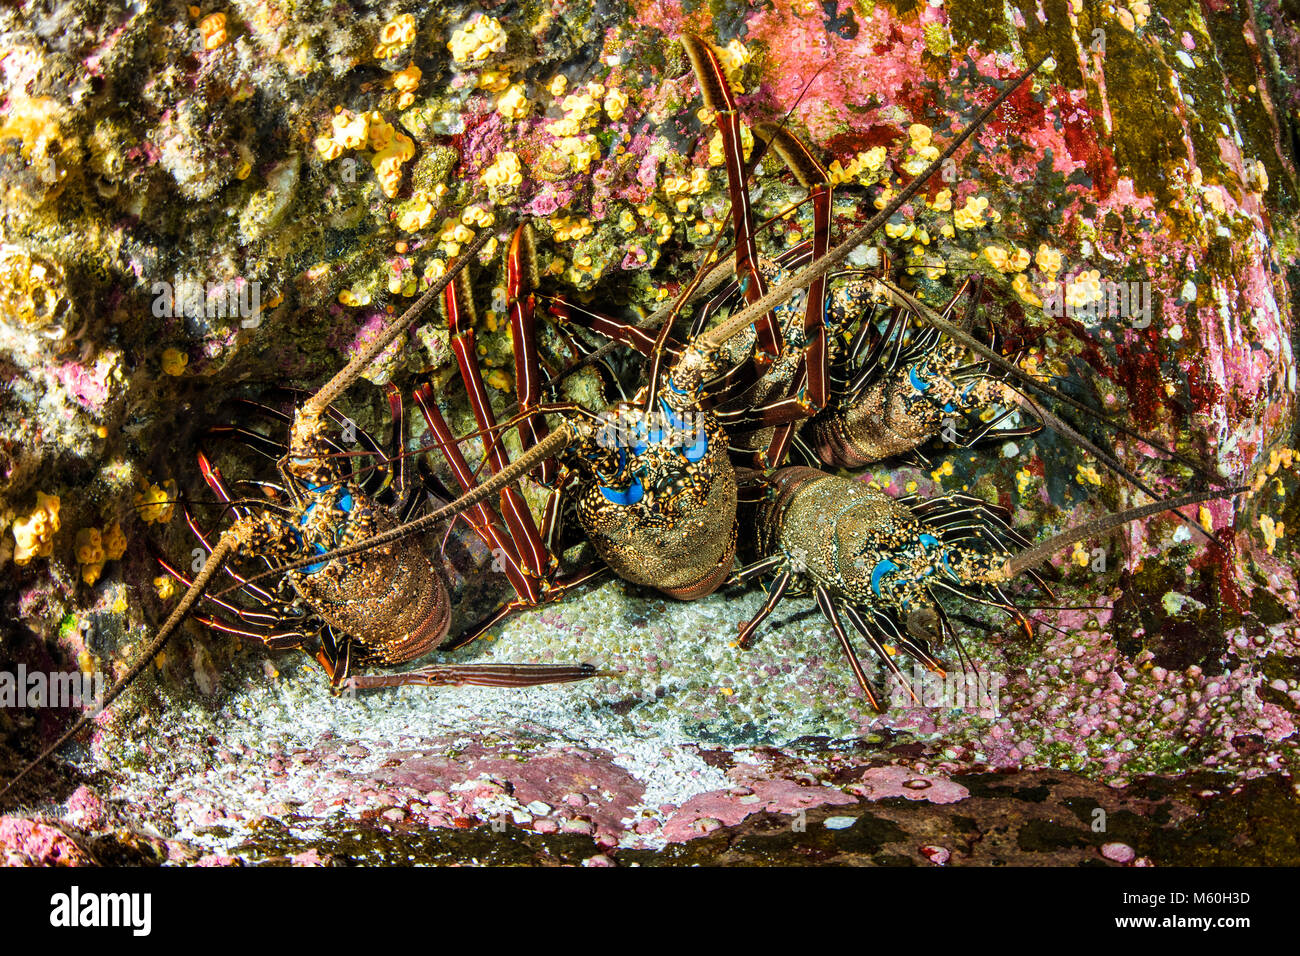 Grupo de la langosta espinosa, Panulirus penicillatus, isla Socorro, las Islas Revillagigedo, México Foto de stock